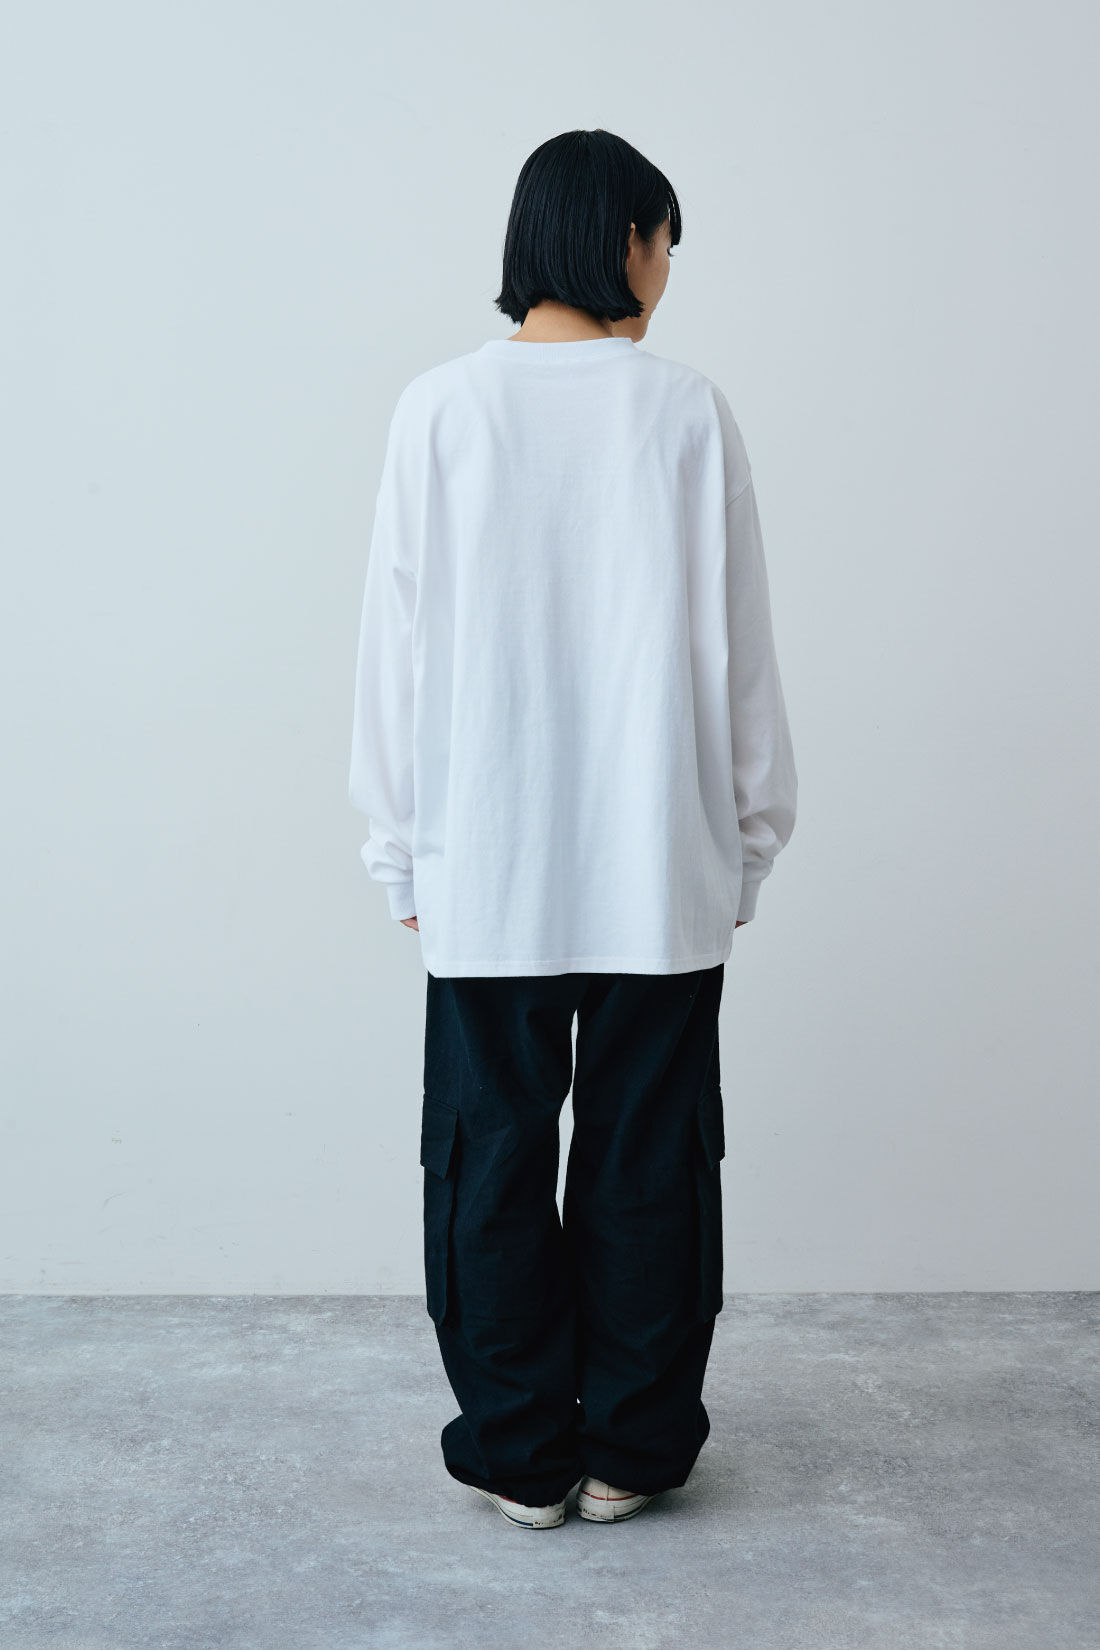 MEDE19F|ART meets MEDE19F　ロングスリーブTシャツ〈Sayuri Nishikubo〉